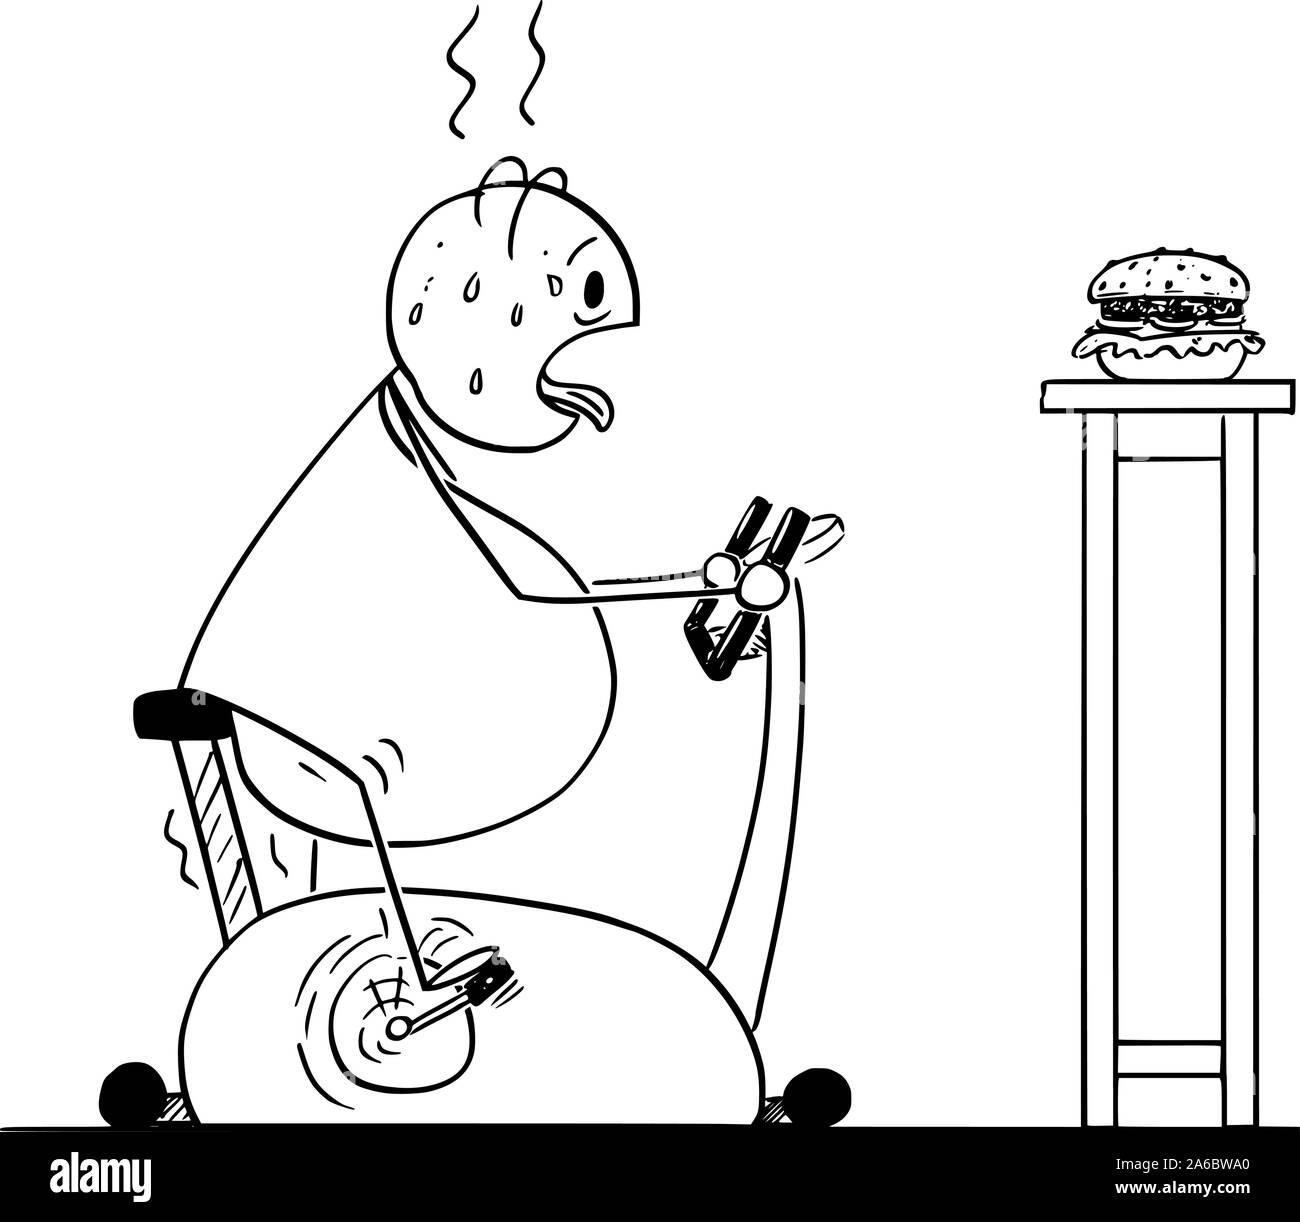 Vector cartoon stick figura disegno illustrazione concettuale di grasso o sovrappeso uomo che cavalca cyclette o bicicletta stazionaria e guardando il burger. Concetto di stile di vita sano. Illustrazione Vettoriale